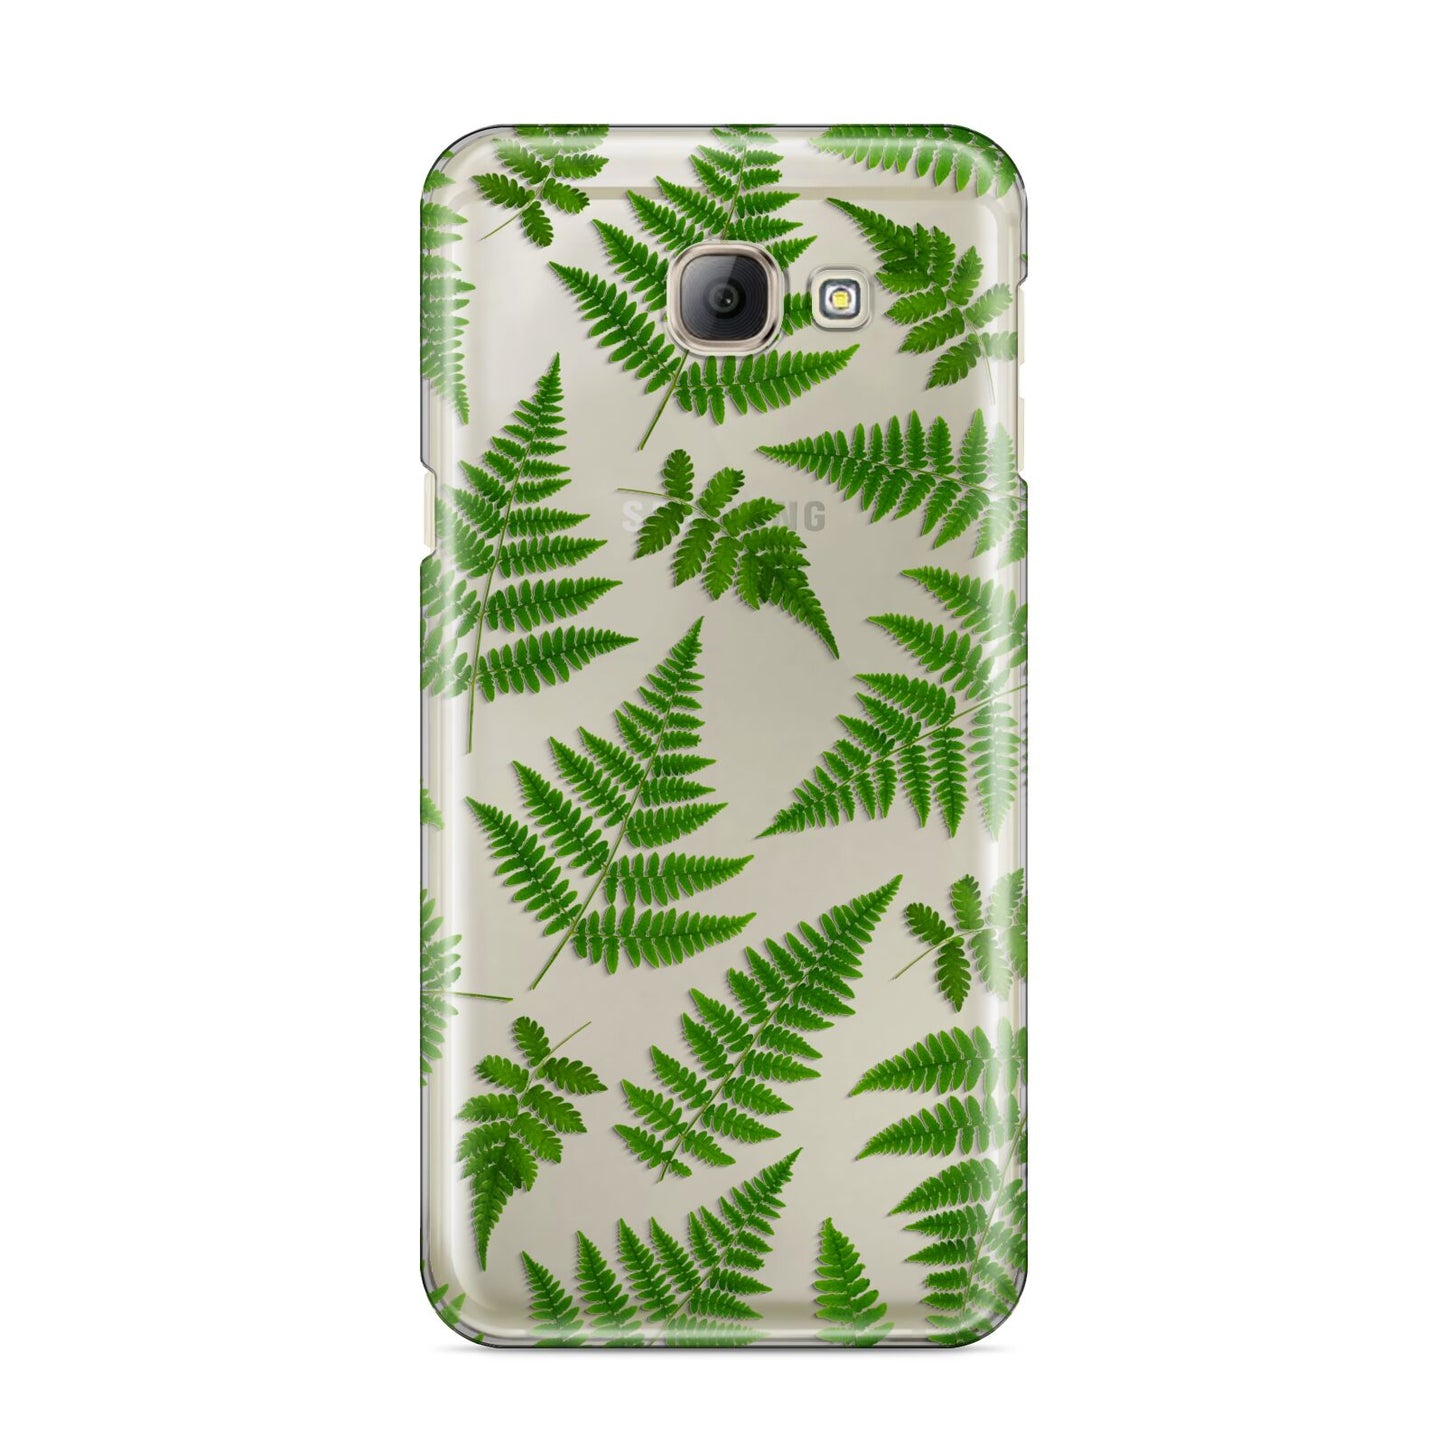 Fern Leaf Samsung Galaxy A8 2016 Case